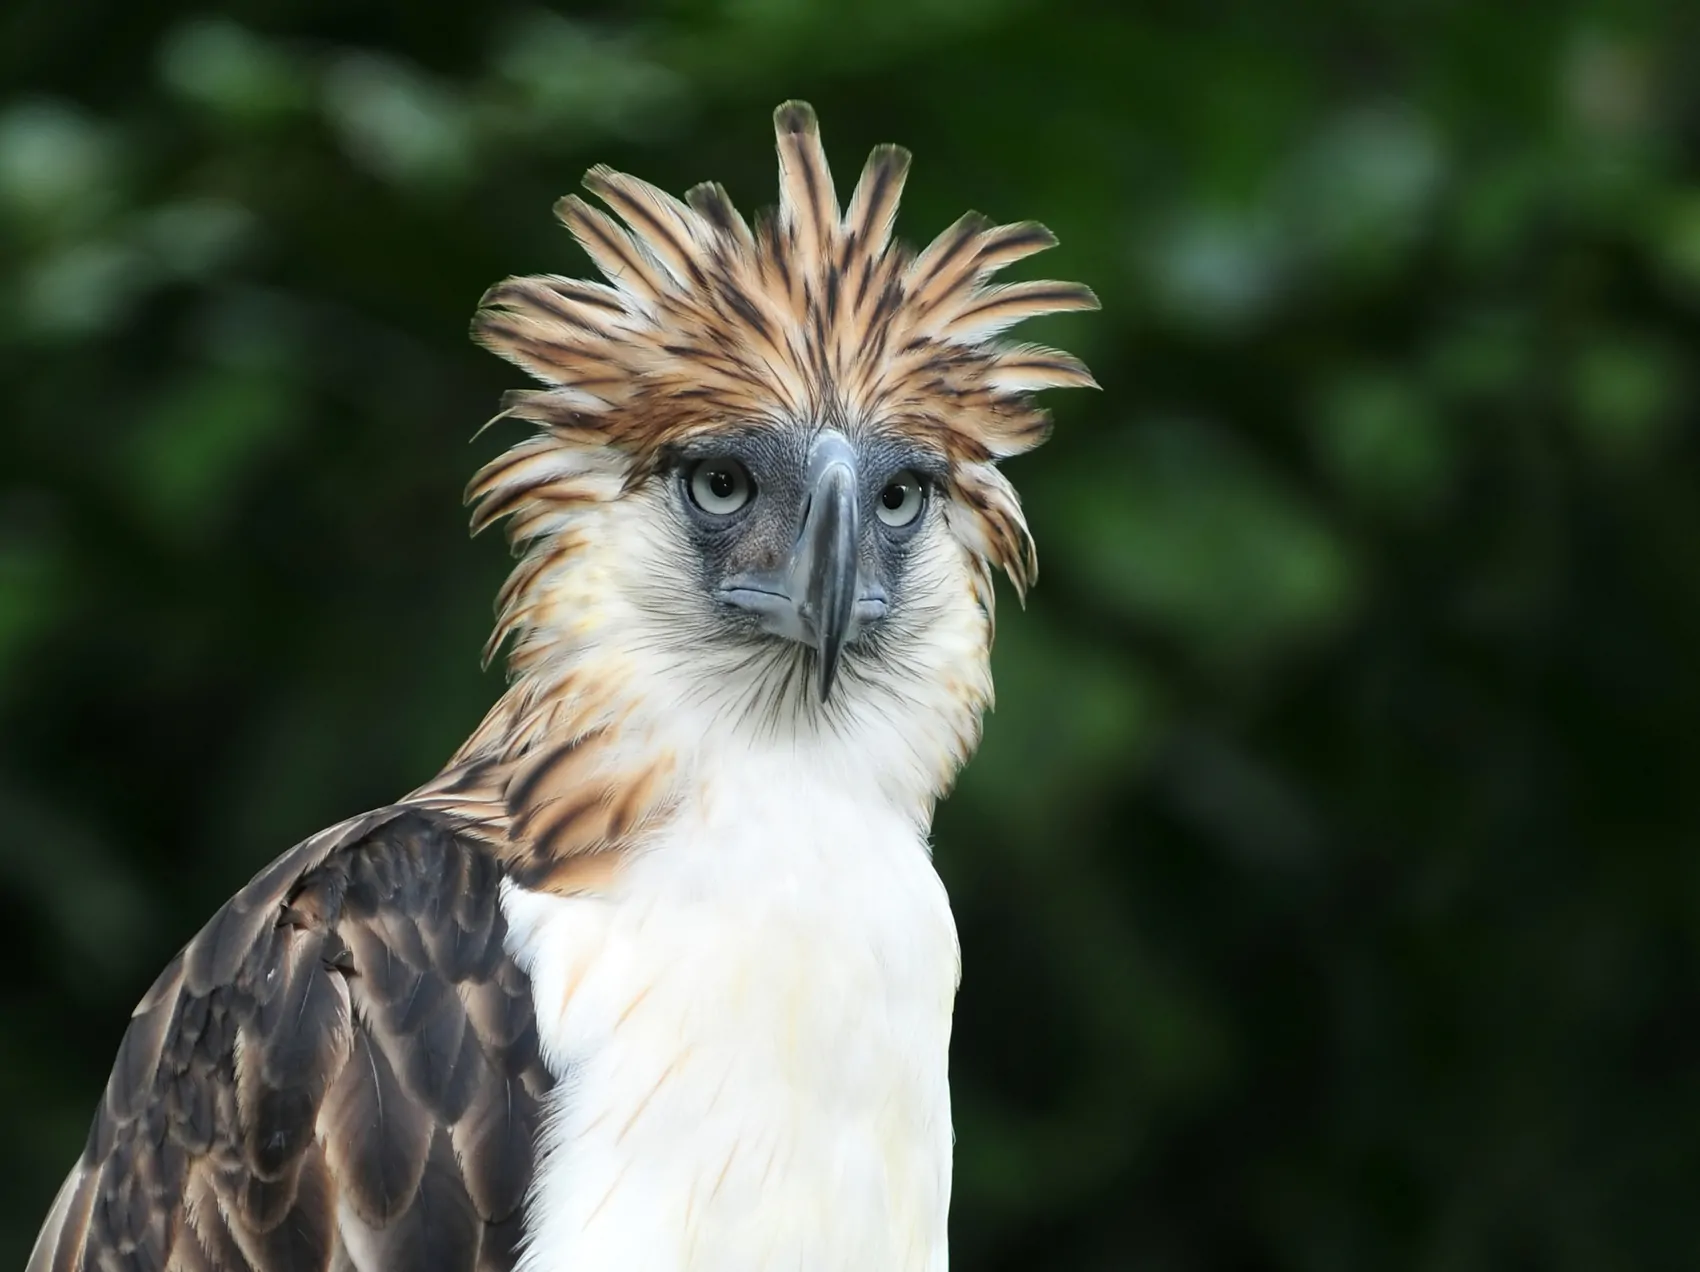 Philippine Eagle eller den abe spisende ørn er en yderst sjælden dyreart idag. Kun 400 par tilbage. Filippinernes truede fauna og flora